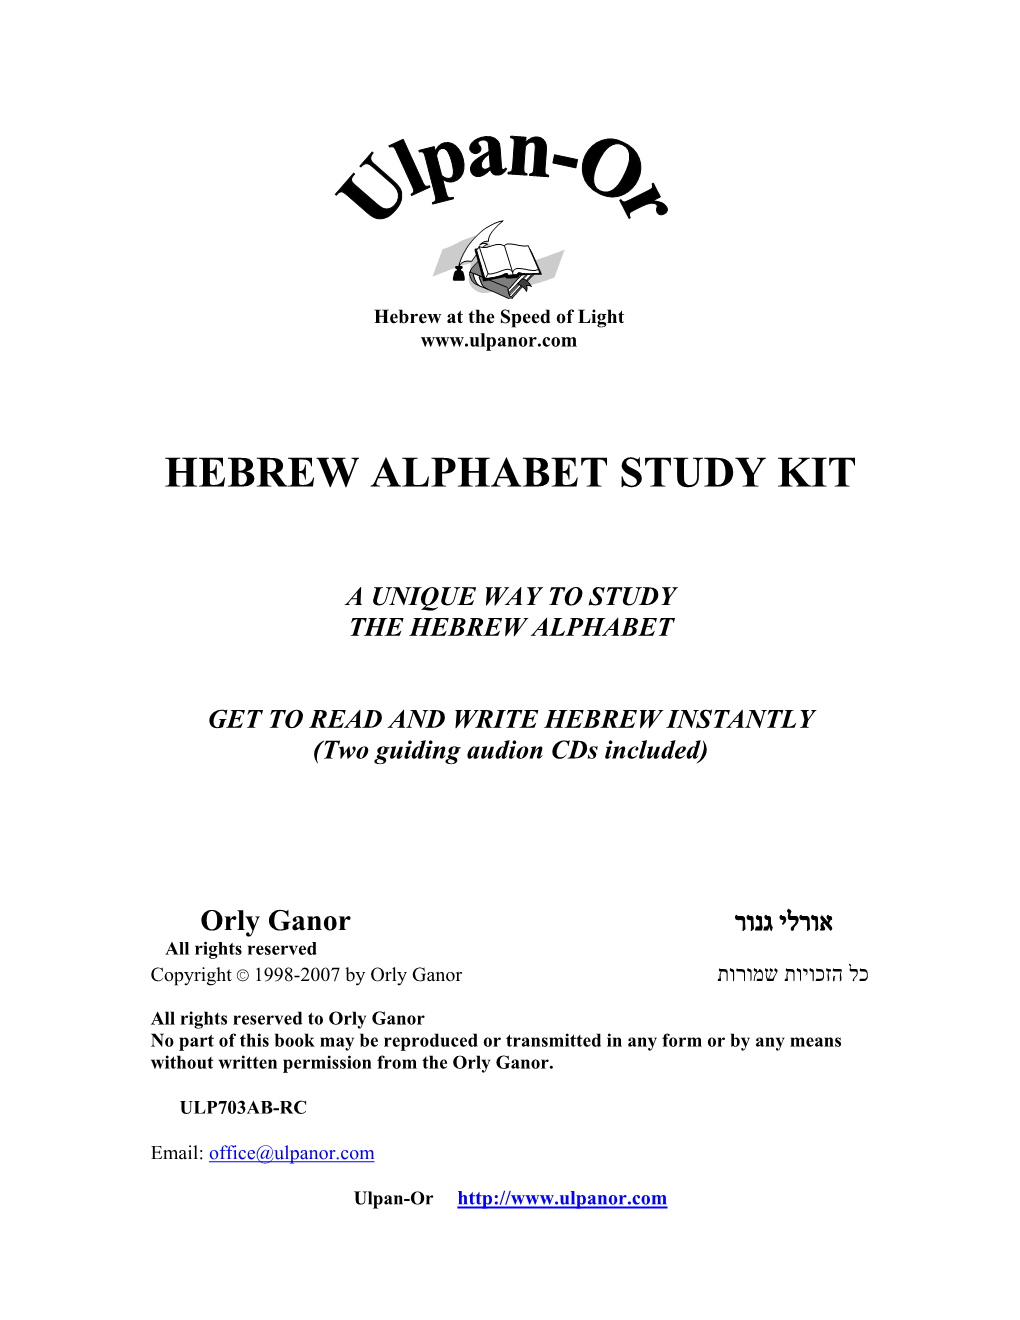 Hebrew Alphabet Study Kit